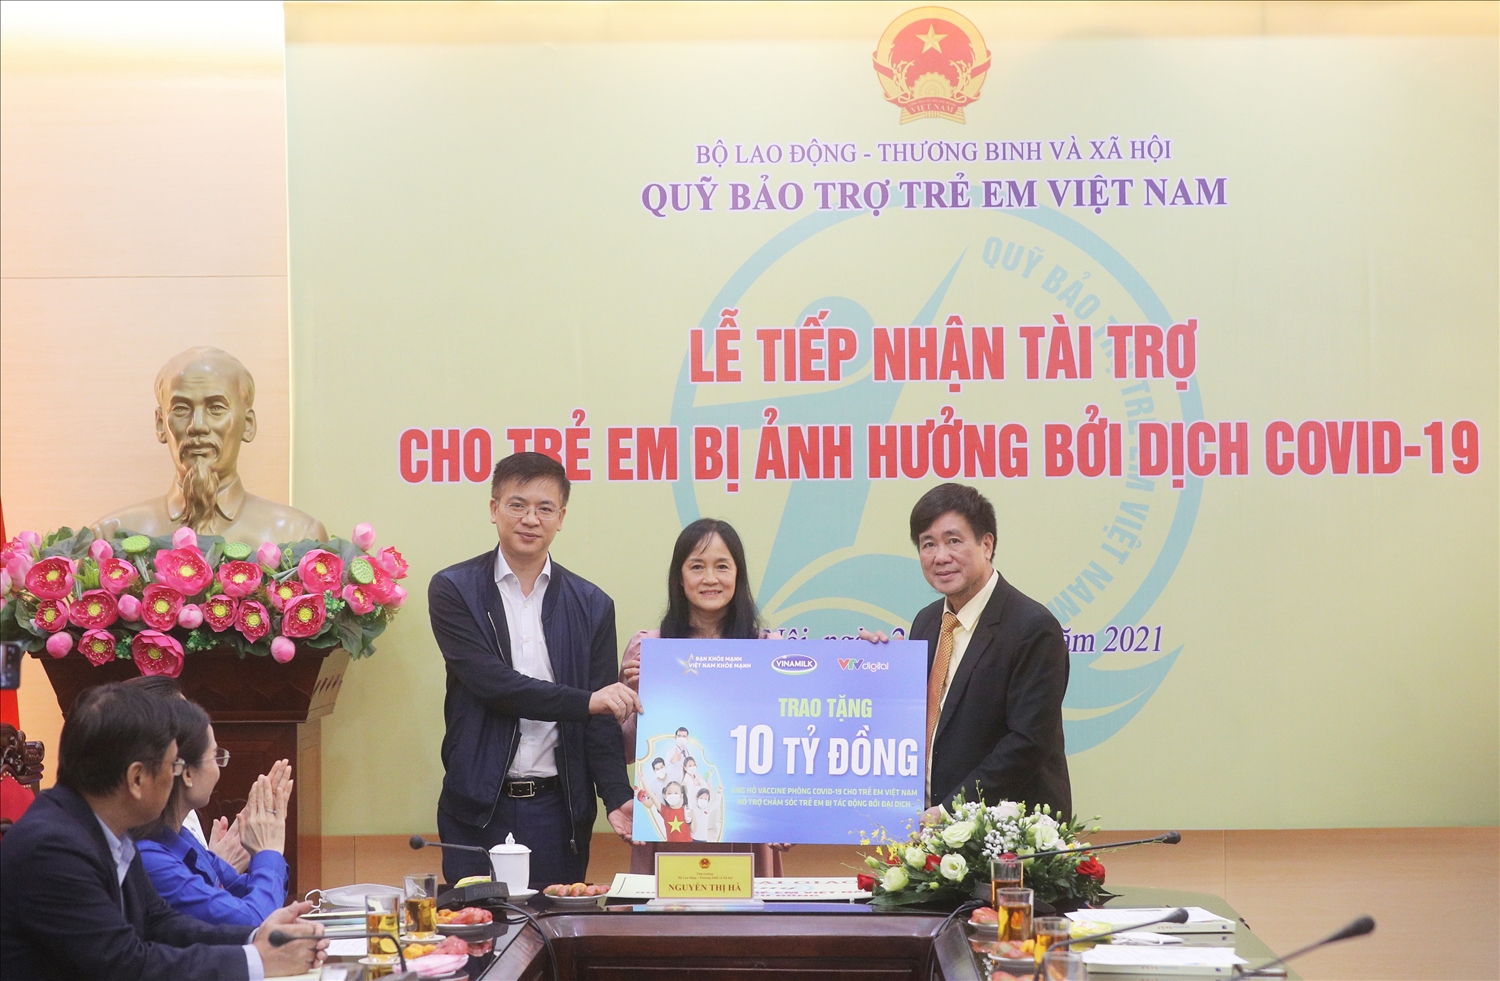 Năm 2021, Vinamilk đóng góp 10 tỷ đồng để góp vaccine cho trẻ em và hỗ trợ các em bị tác động bởi Covid-19 qua chiến dịch “Bạn khỏe mạnh, Việt Nam khỏe mạnh”